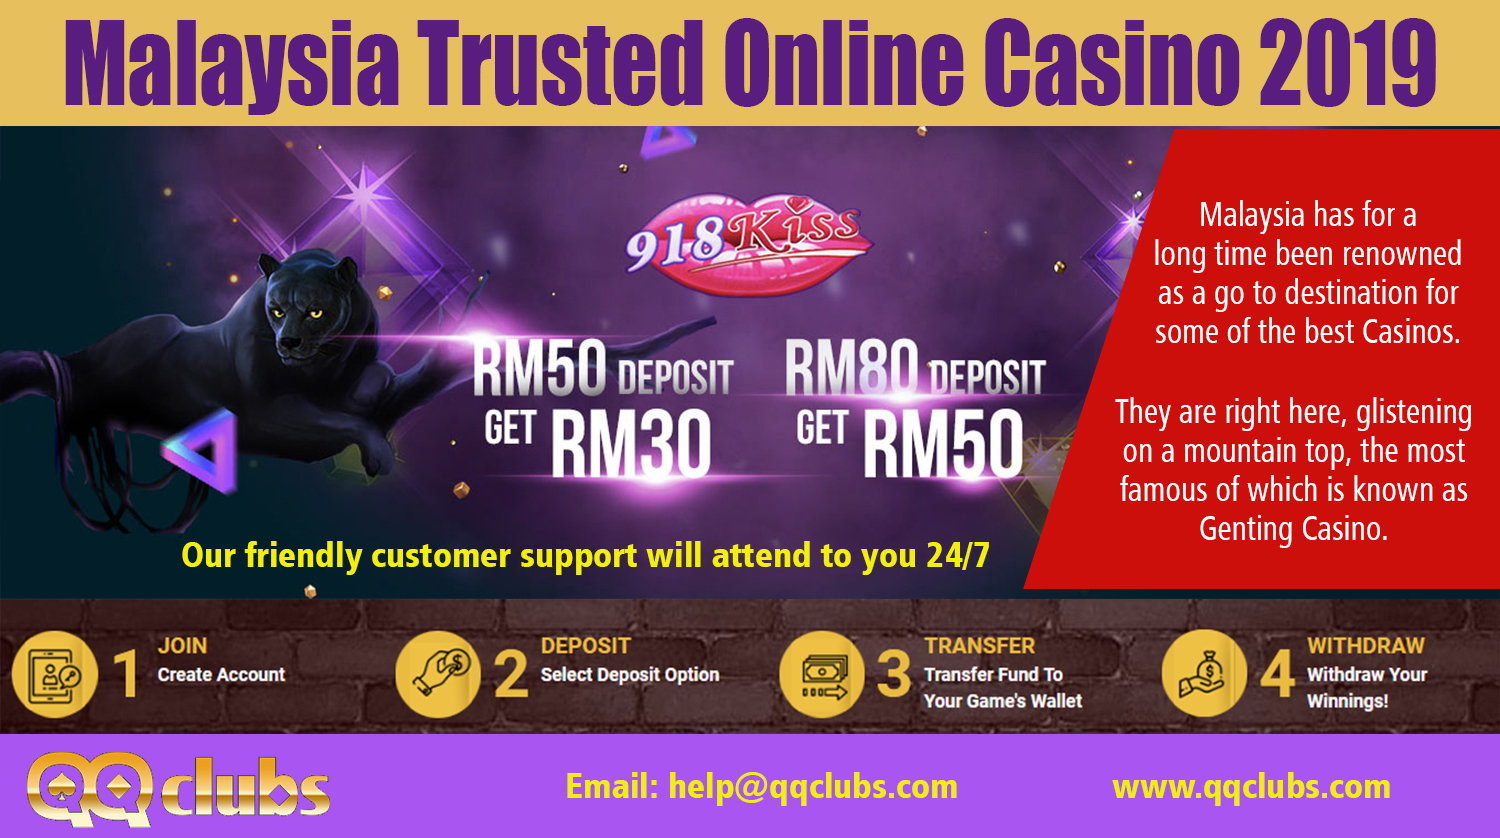 Malaysia casino online free credit 2019 ipb легально ли играть в онлайн казино в россии